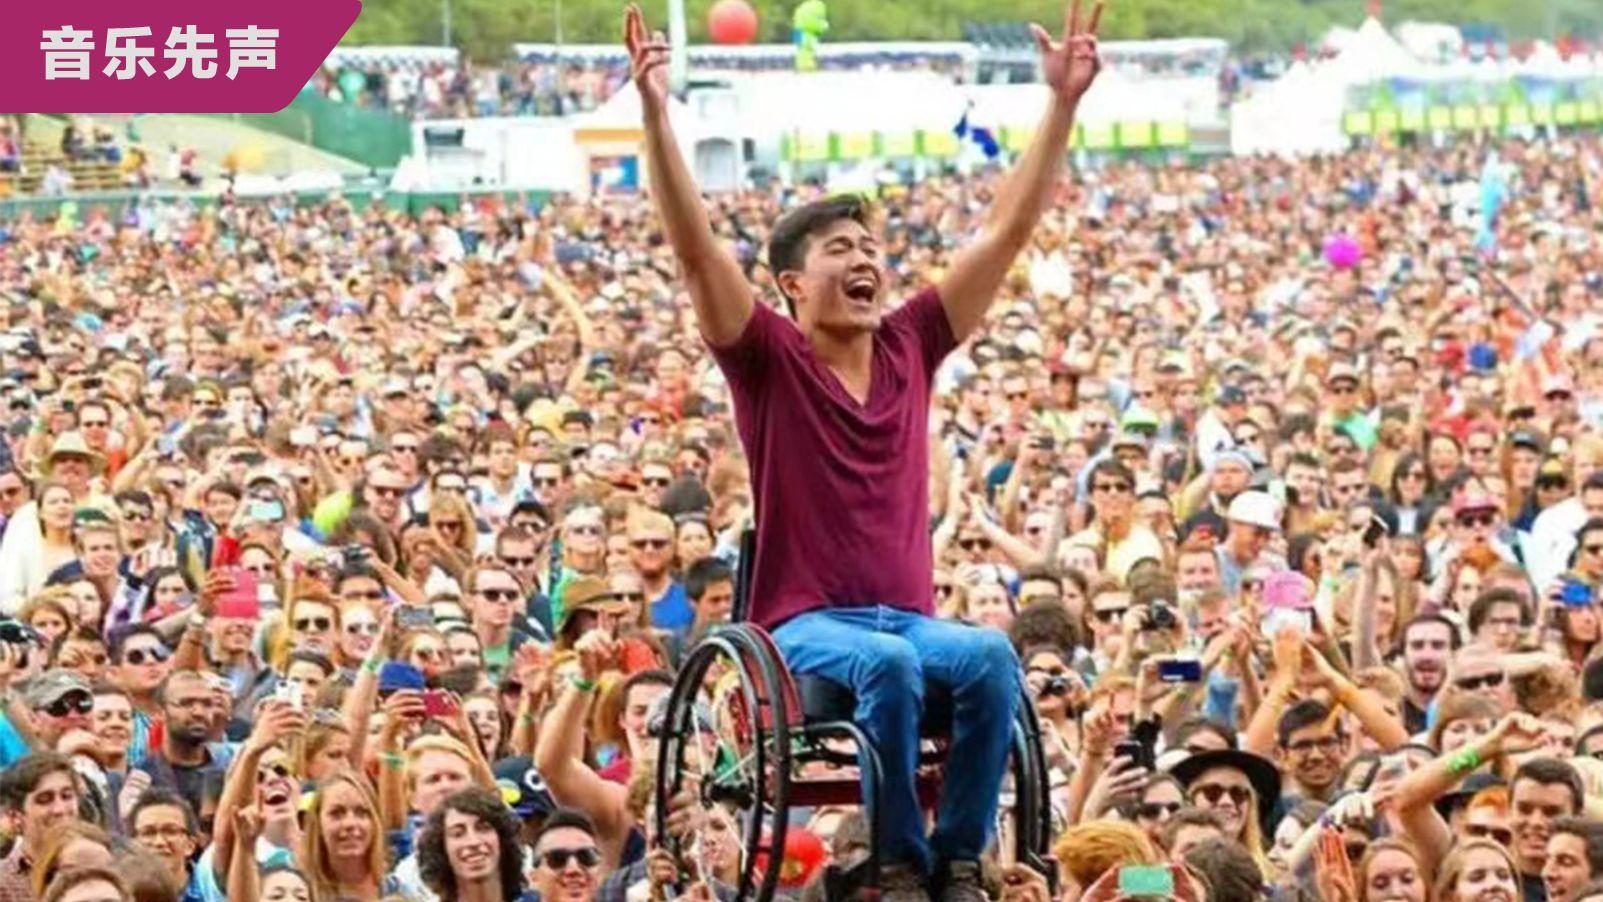 别再说残障人士不能去看音乐节了